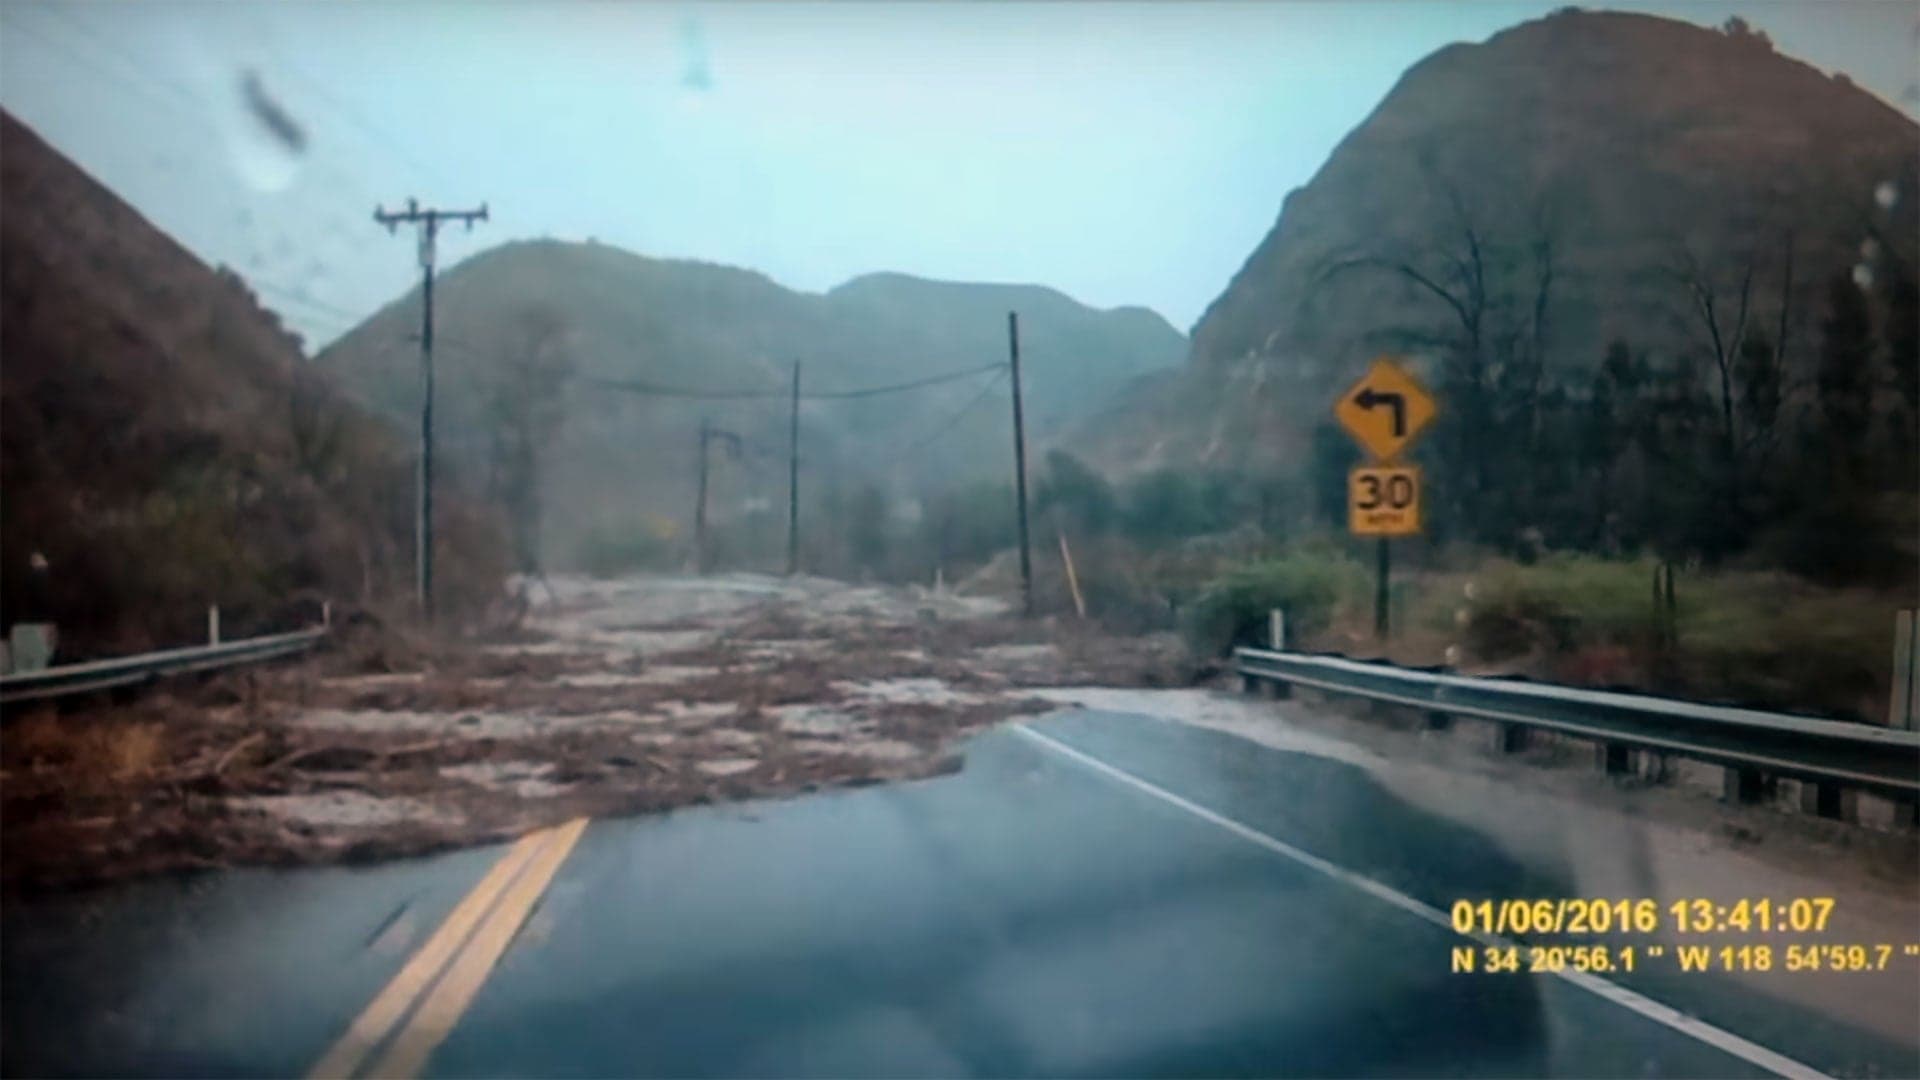 San Diego Flood Dashcam Is a Horror Film in Slow Motion